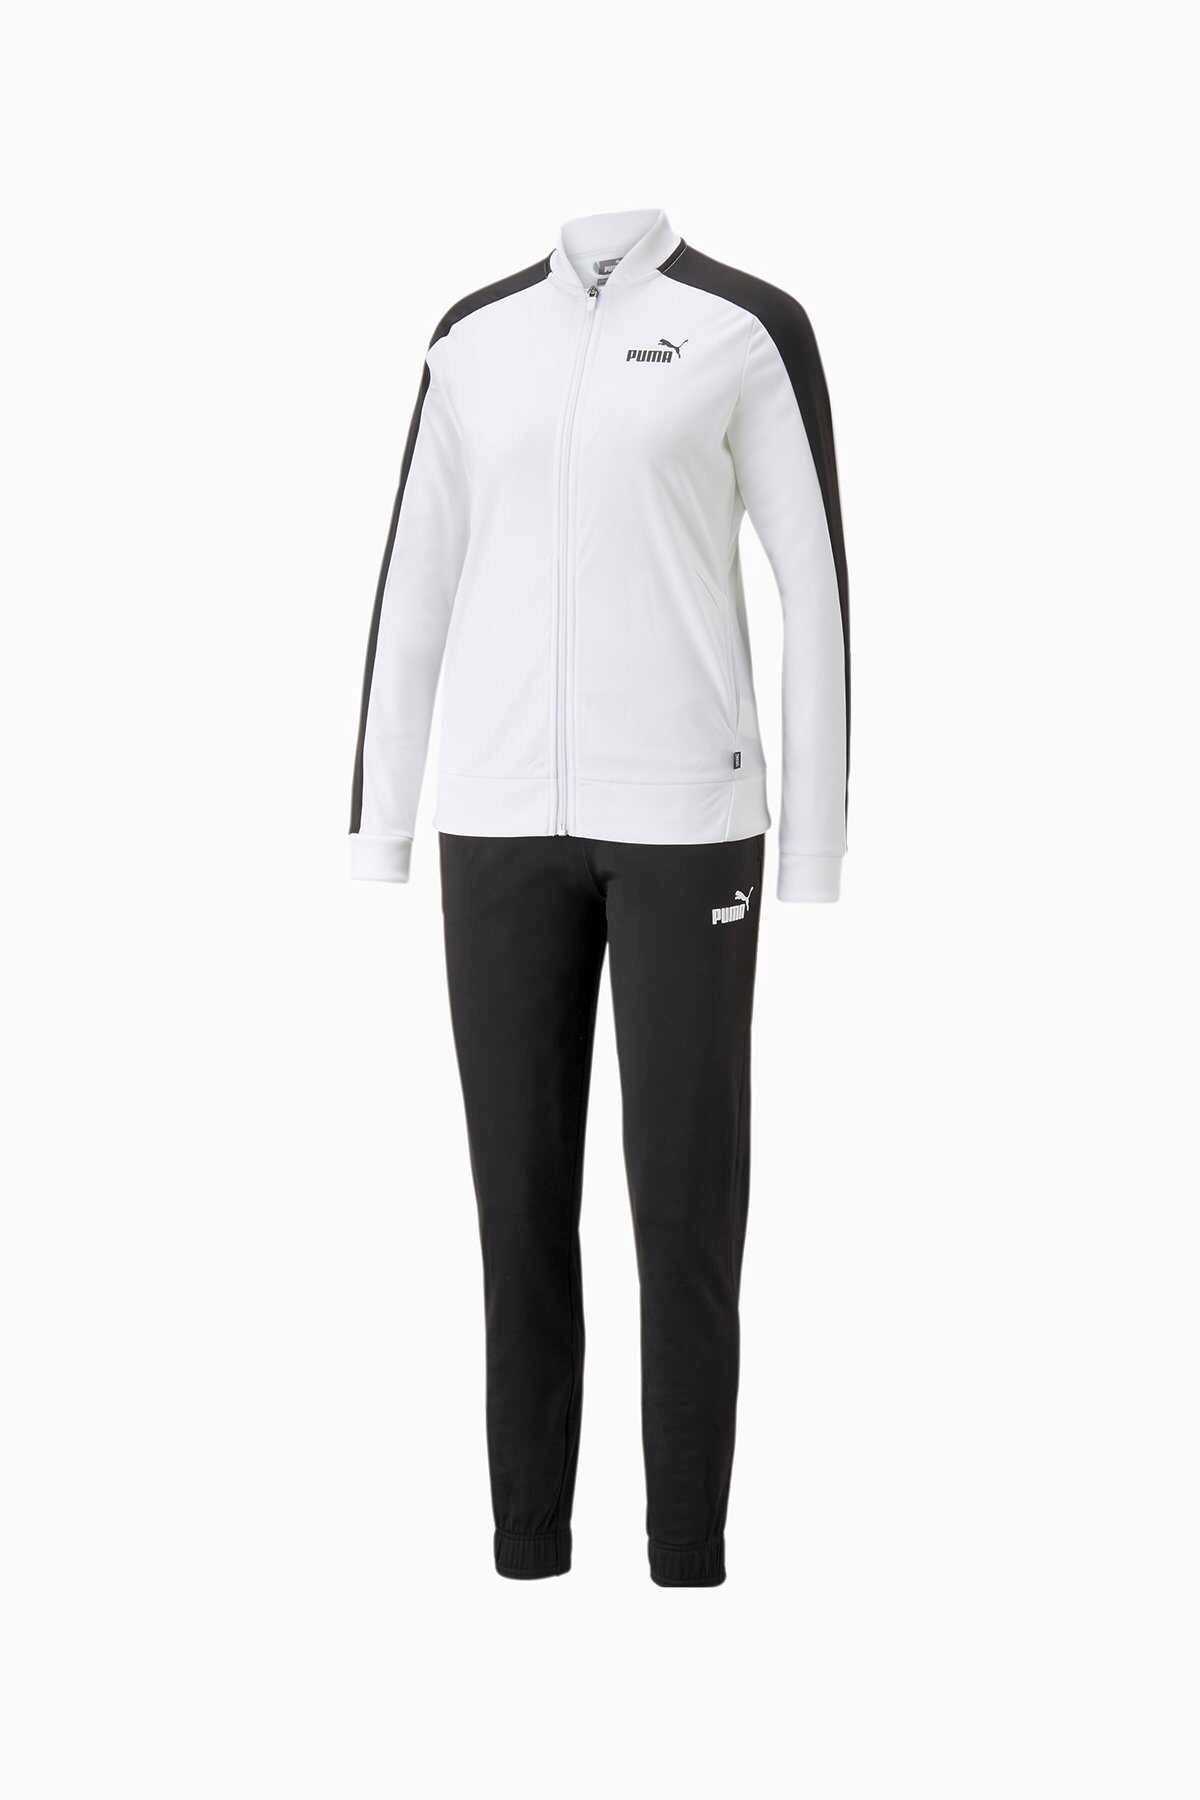 Puma Baseball Tricot Suit Cl Kadın Beyaz Eşofman Takımı - 673700-02